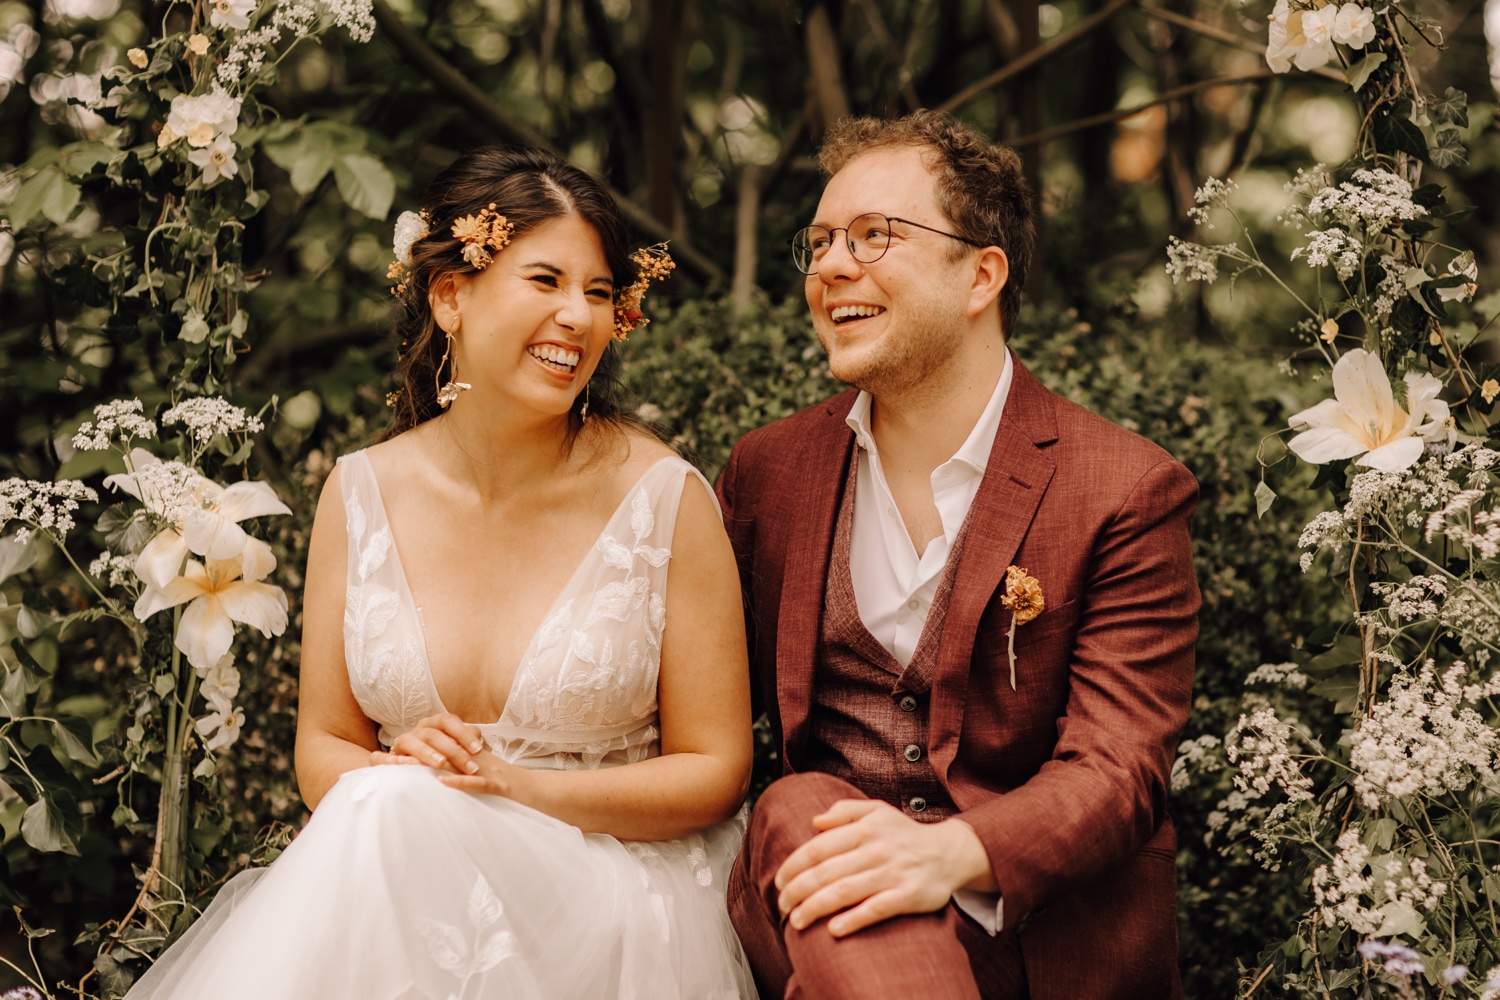 Huwelijksfotograaf Limburg - bruidspaar lacht tijdens ceremonie